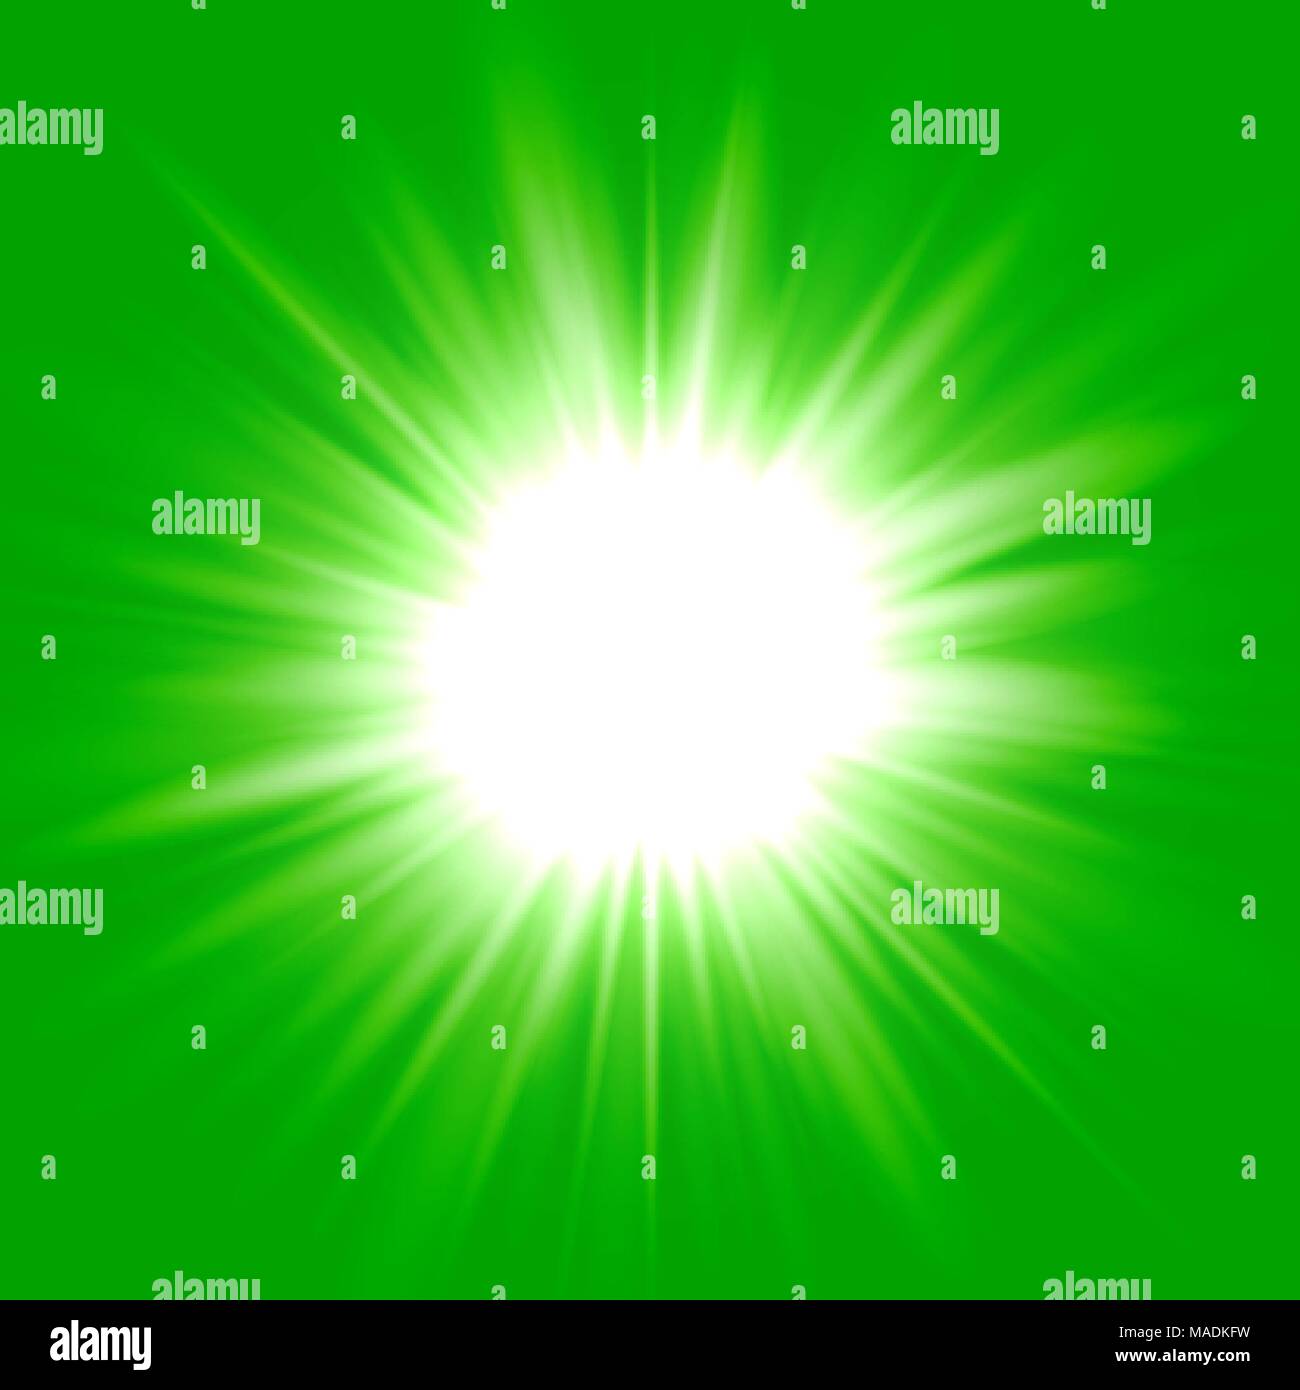 Green flash star background, white light rays vector illustration Stock Vector